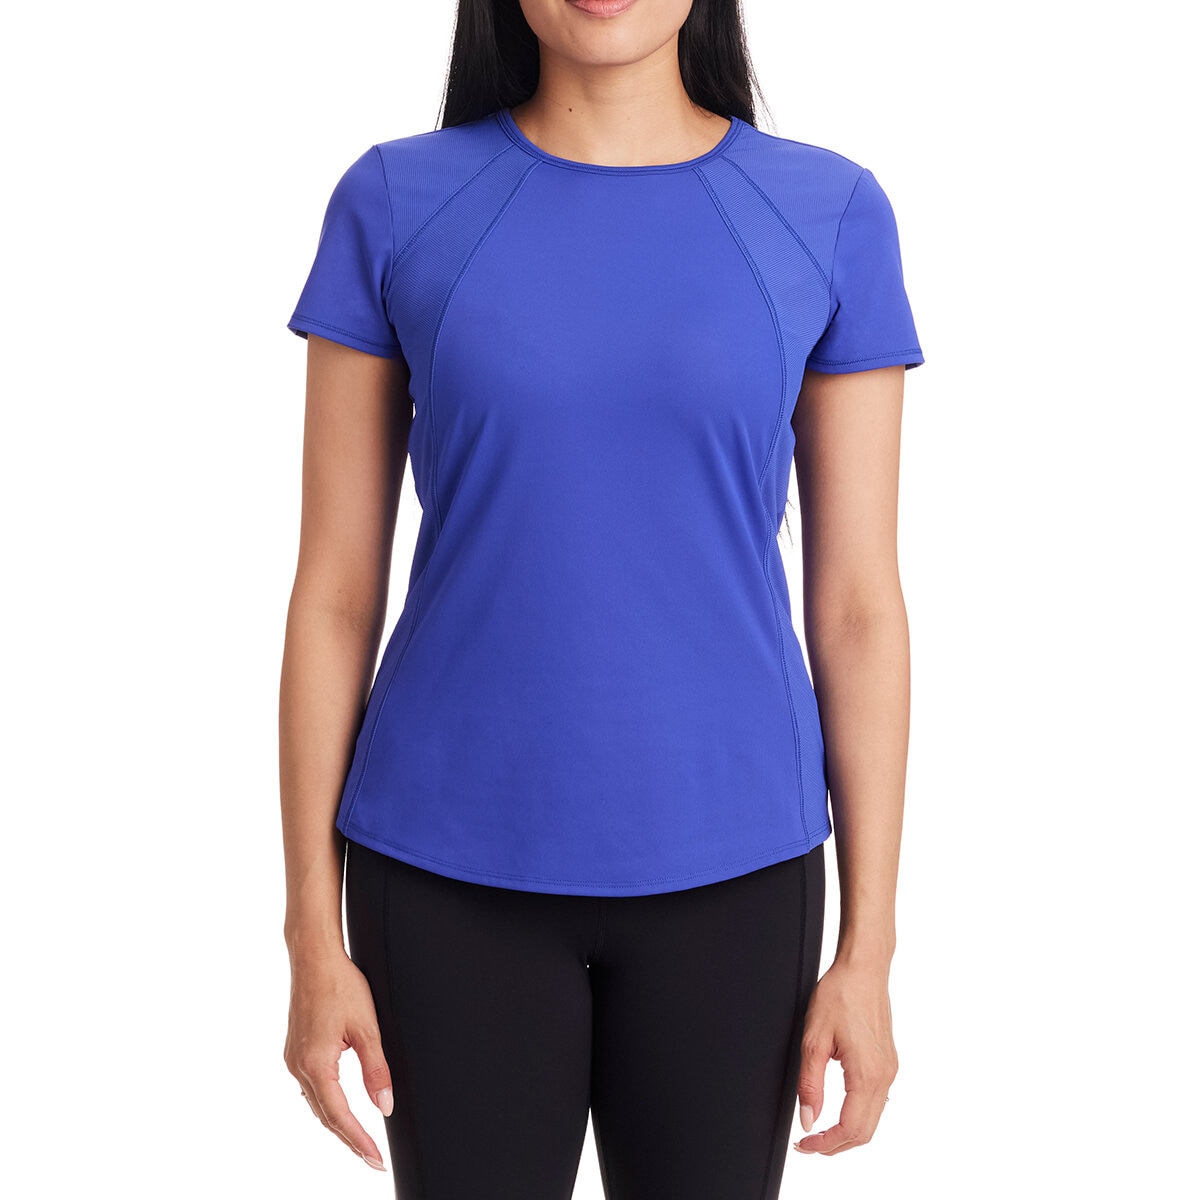 Avalanche Camiseta Deportiva para Dama Varias Tallas y Colores